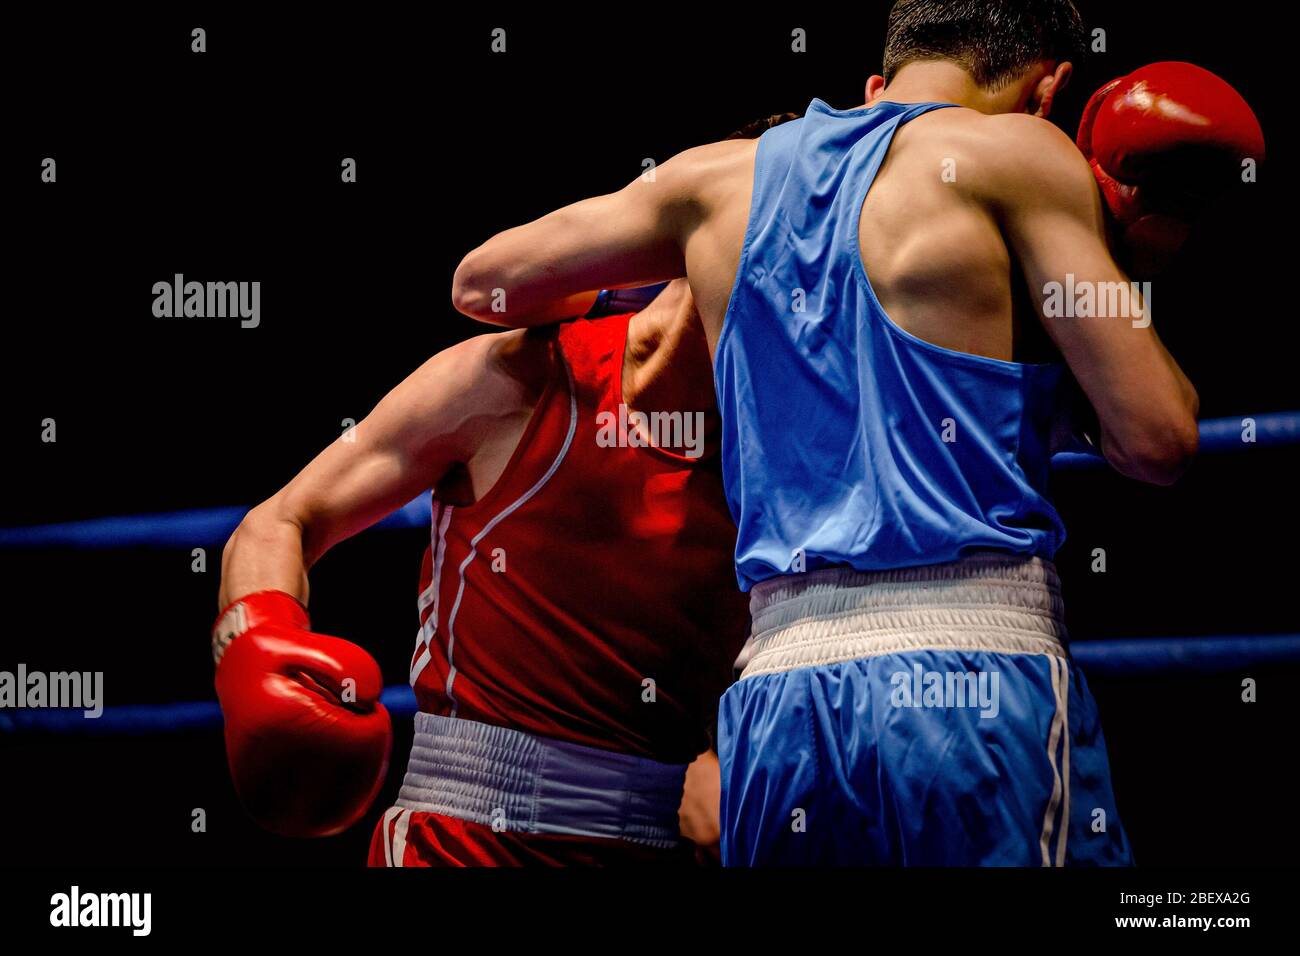 Boxkampf zwei Boxer in Ring auf schwarzem Hintergrund Stockfoto